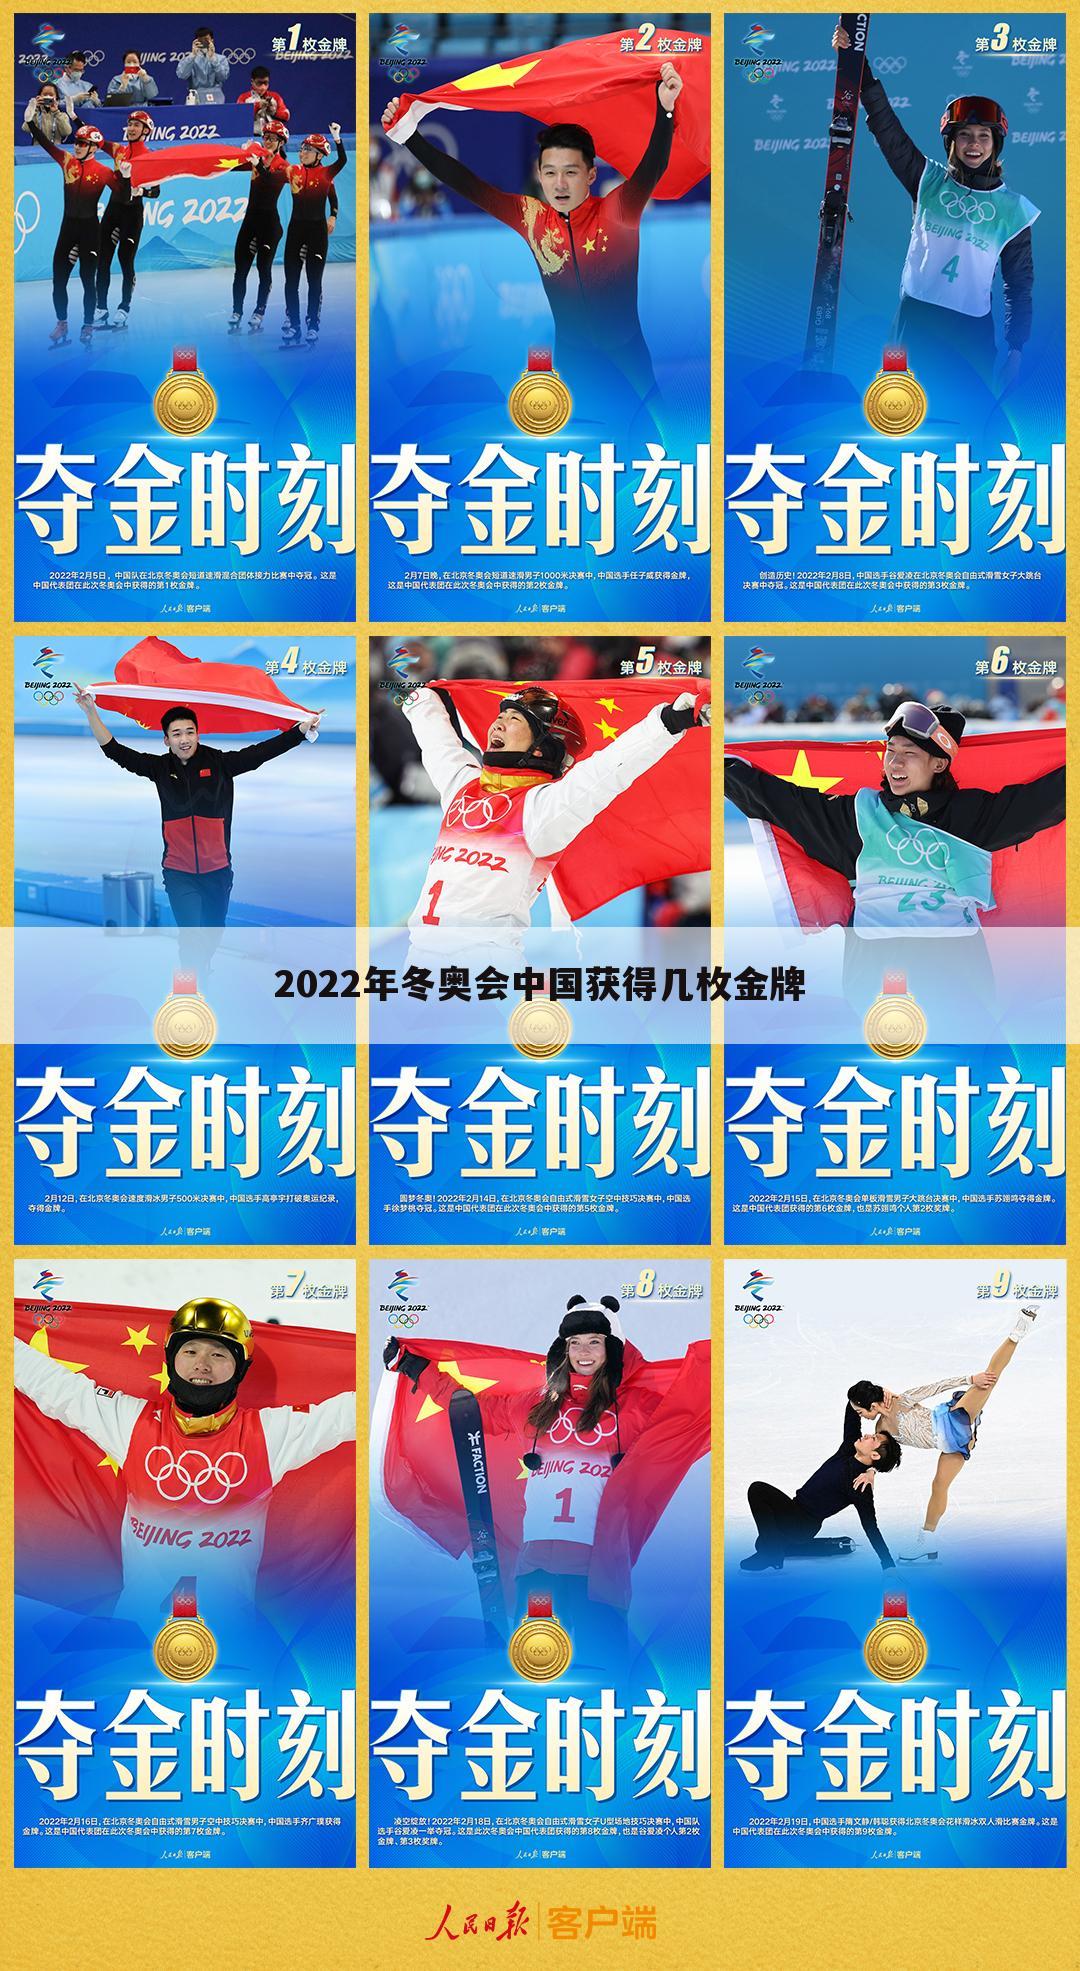 2022年冬奥会中国获得几枚金牌